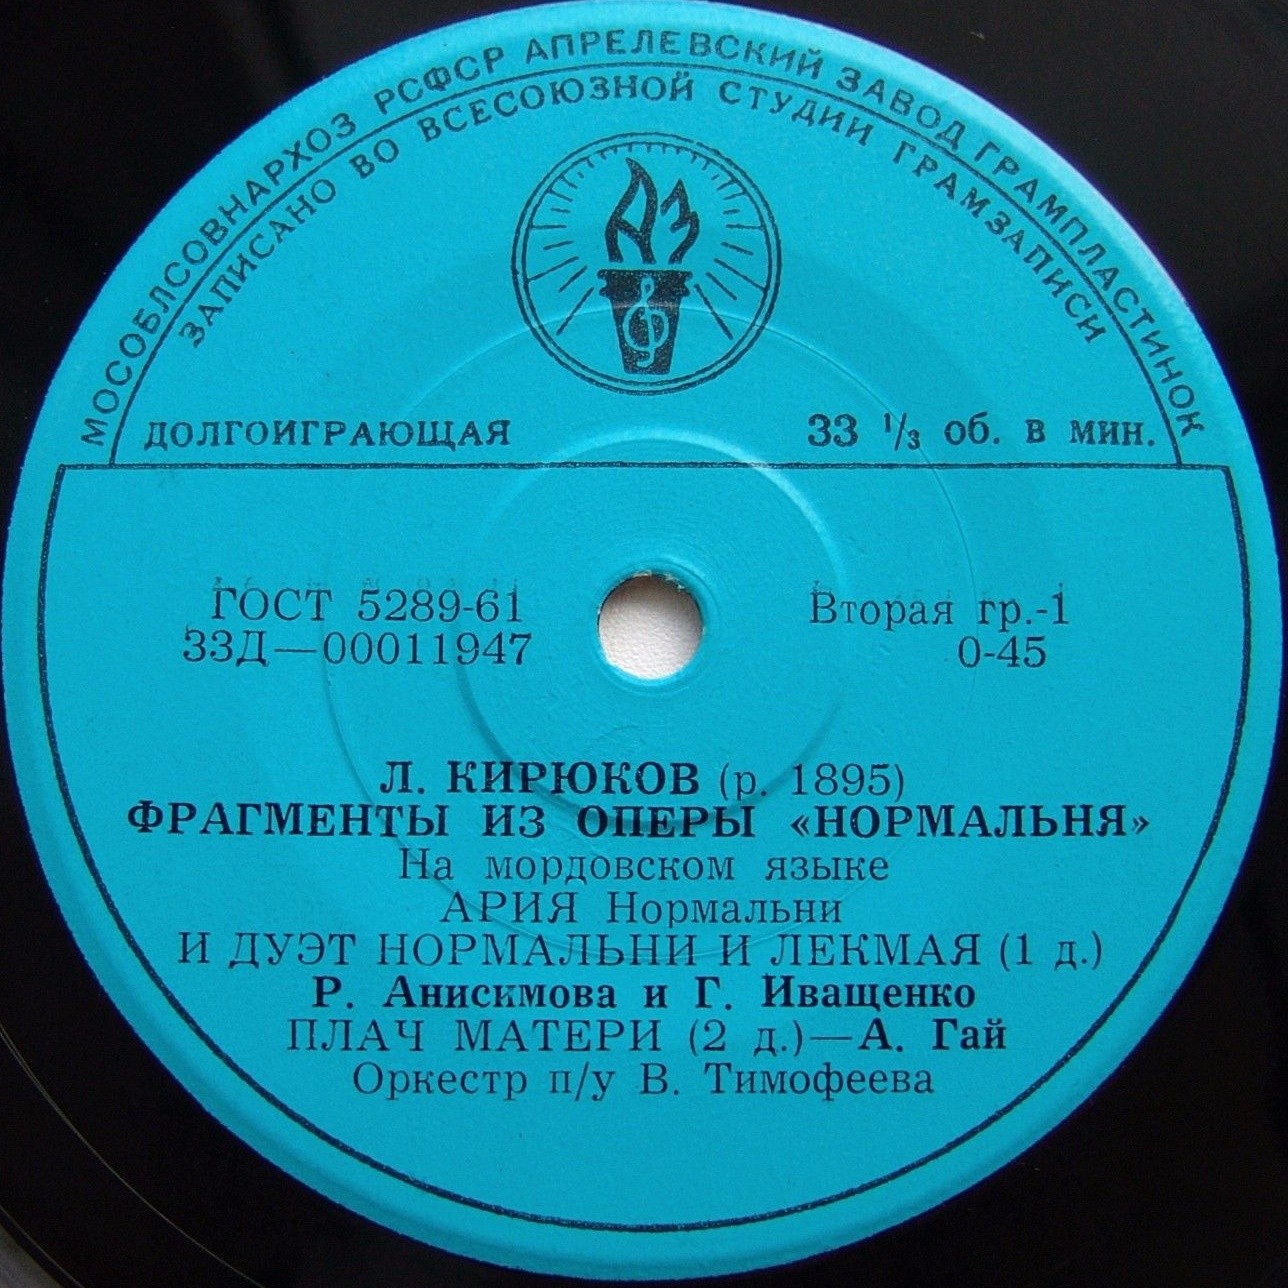 Л. КИРЮКОВ (р. 1895)  „Нормальня", фрагменты из оперы (на мордовском языке)